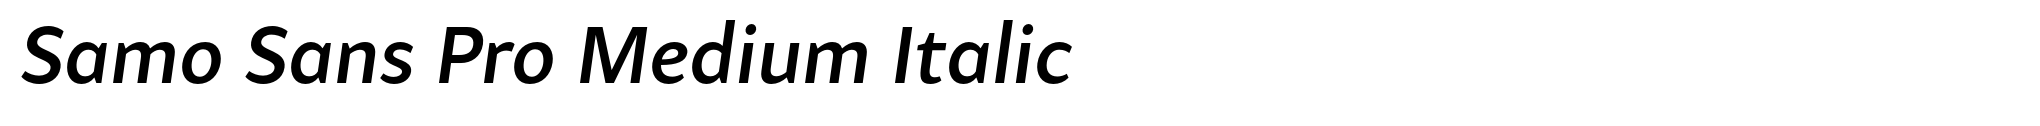 Samo Sans Pro Medium Italic image